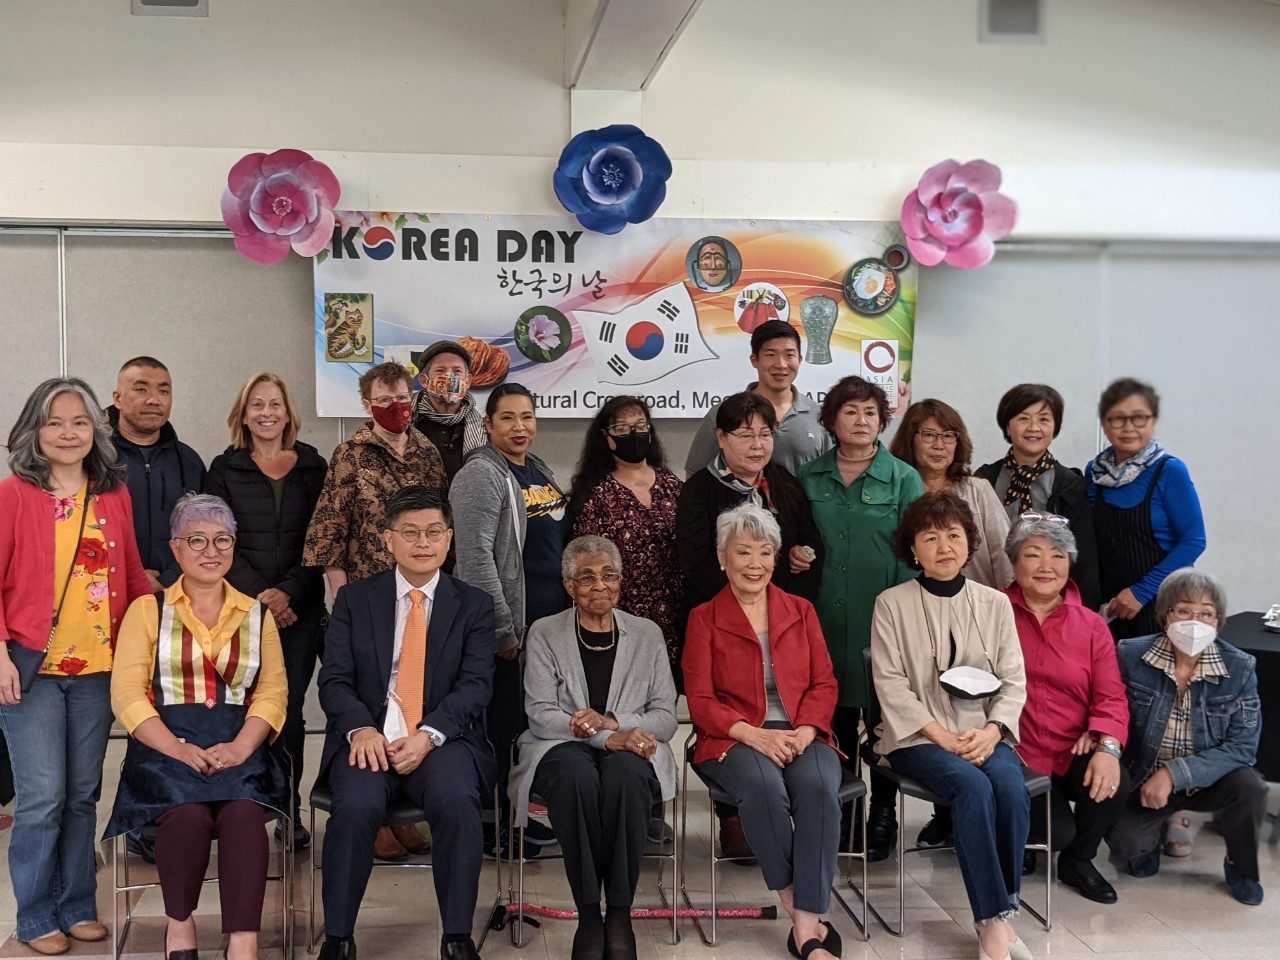 제8회 한국의 날(Korea Day) 행사가 지난 5월1일 미국 워싱턴주 타코마시에 있는 아태문화센터에서 열렸다.[사진제공=주시애틀한국총영사관]